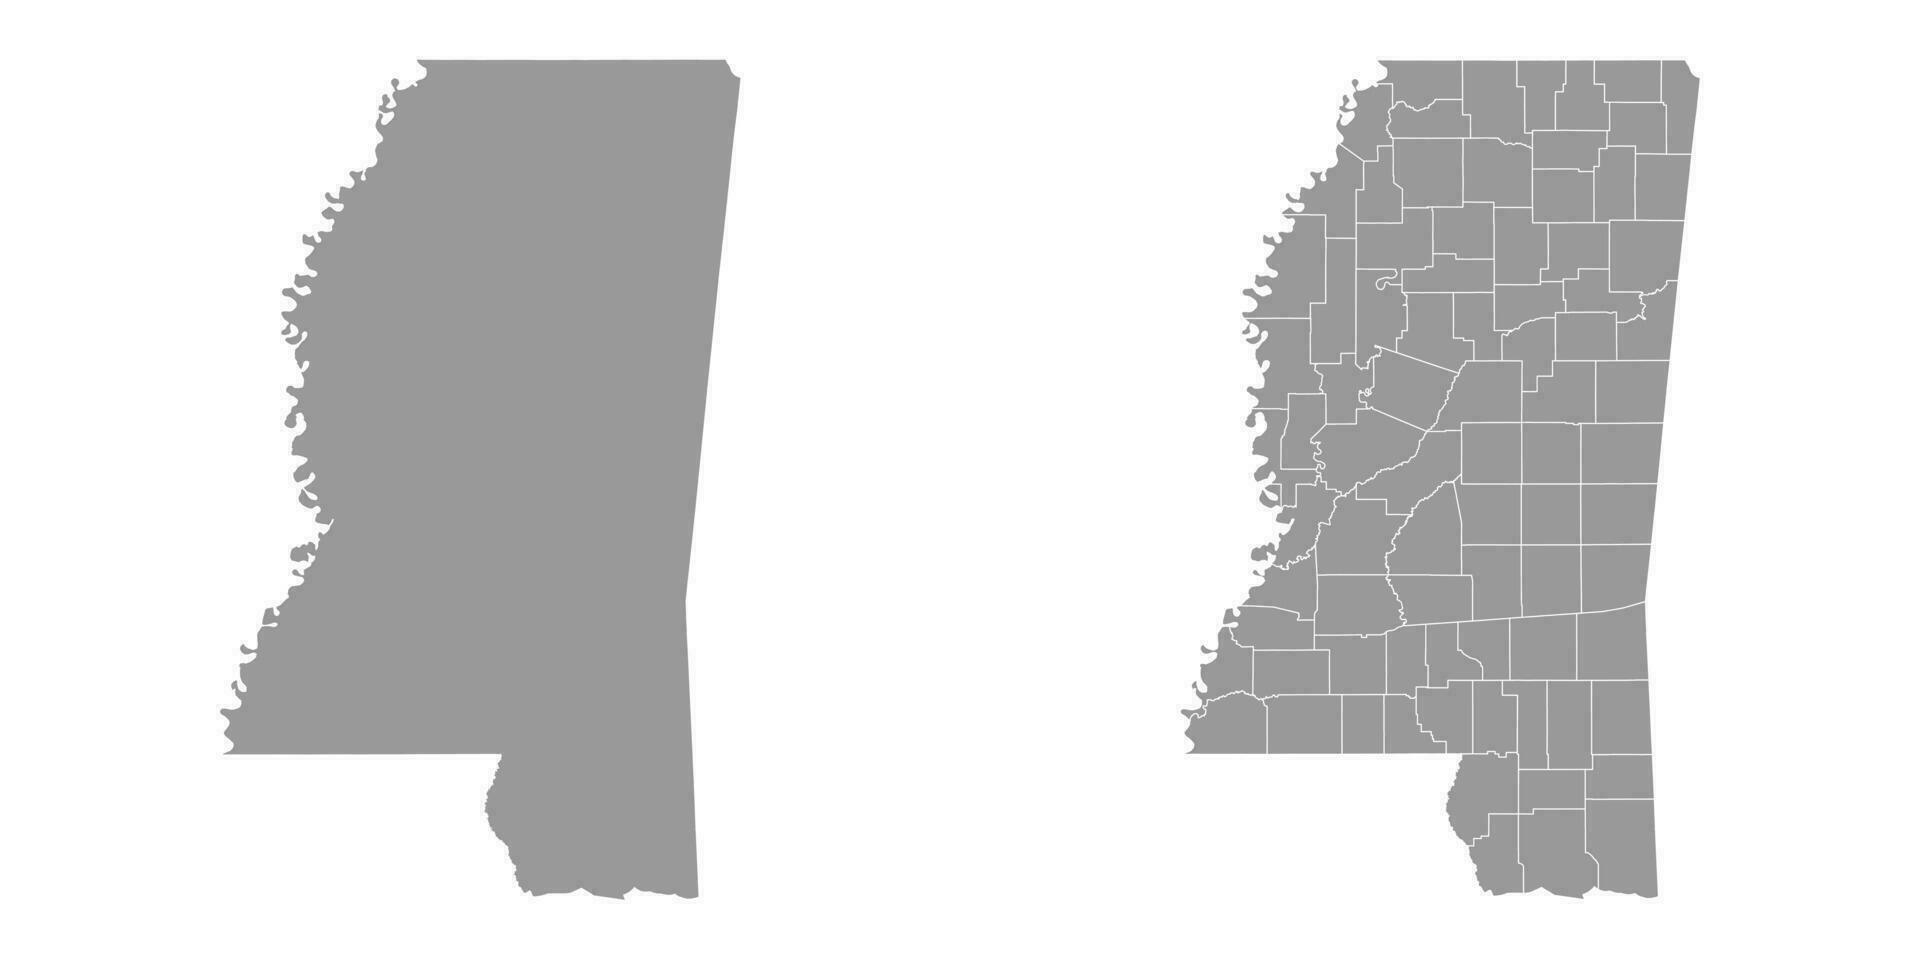 Mississippi Estado cinzento mapas. vetor ilustração.